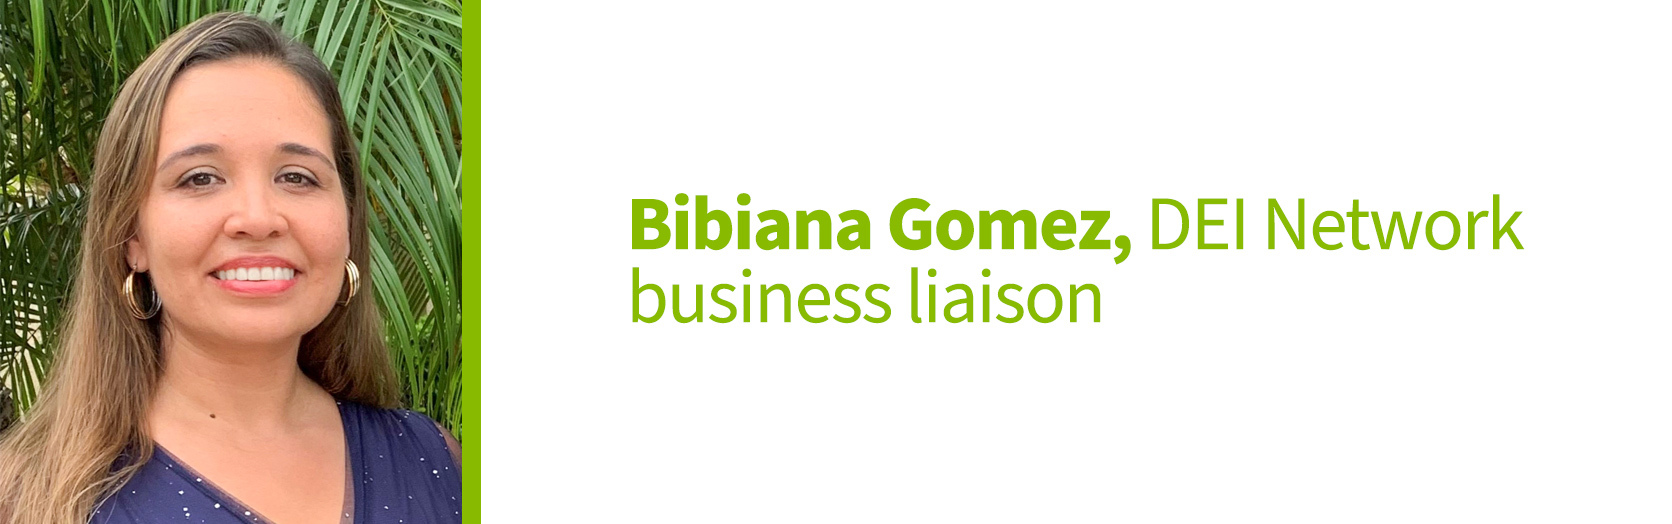 Bibiana Gomez, DEI Network business liaison